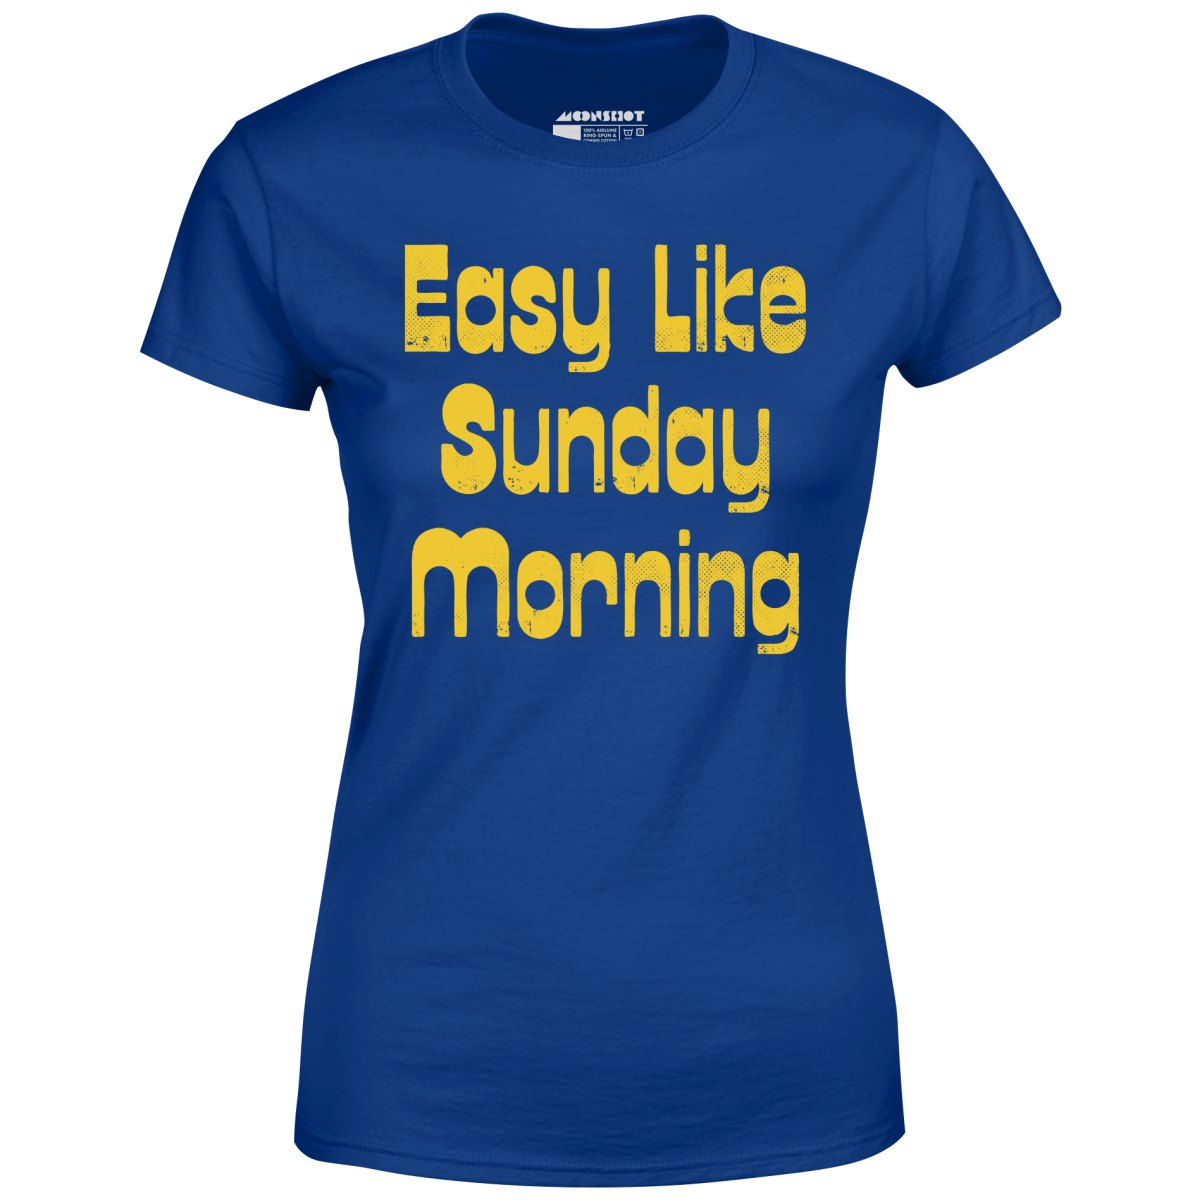 Easy Like Sunday Morning - Women's T-Shirt